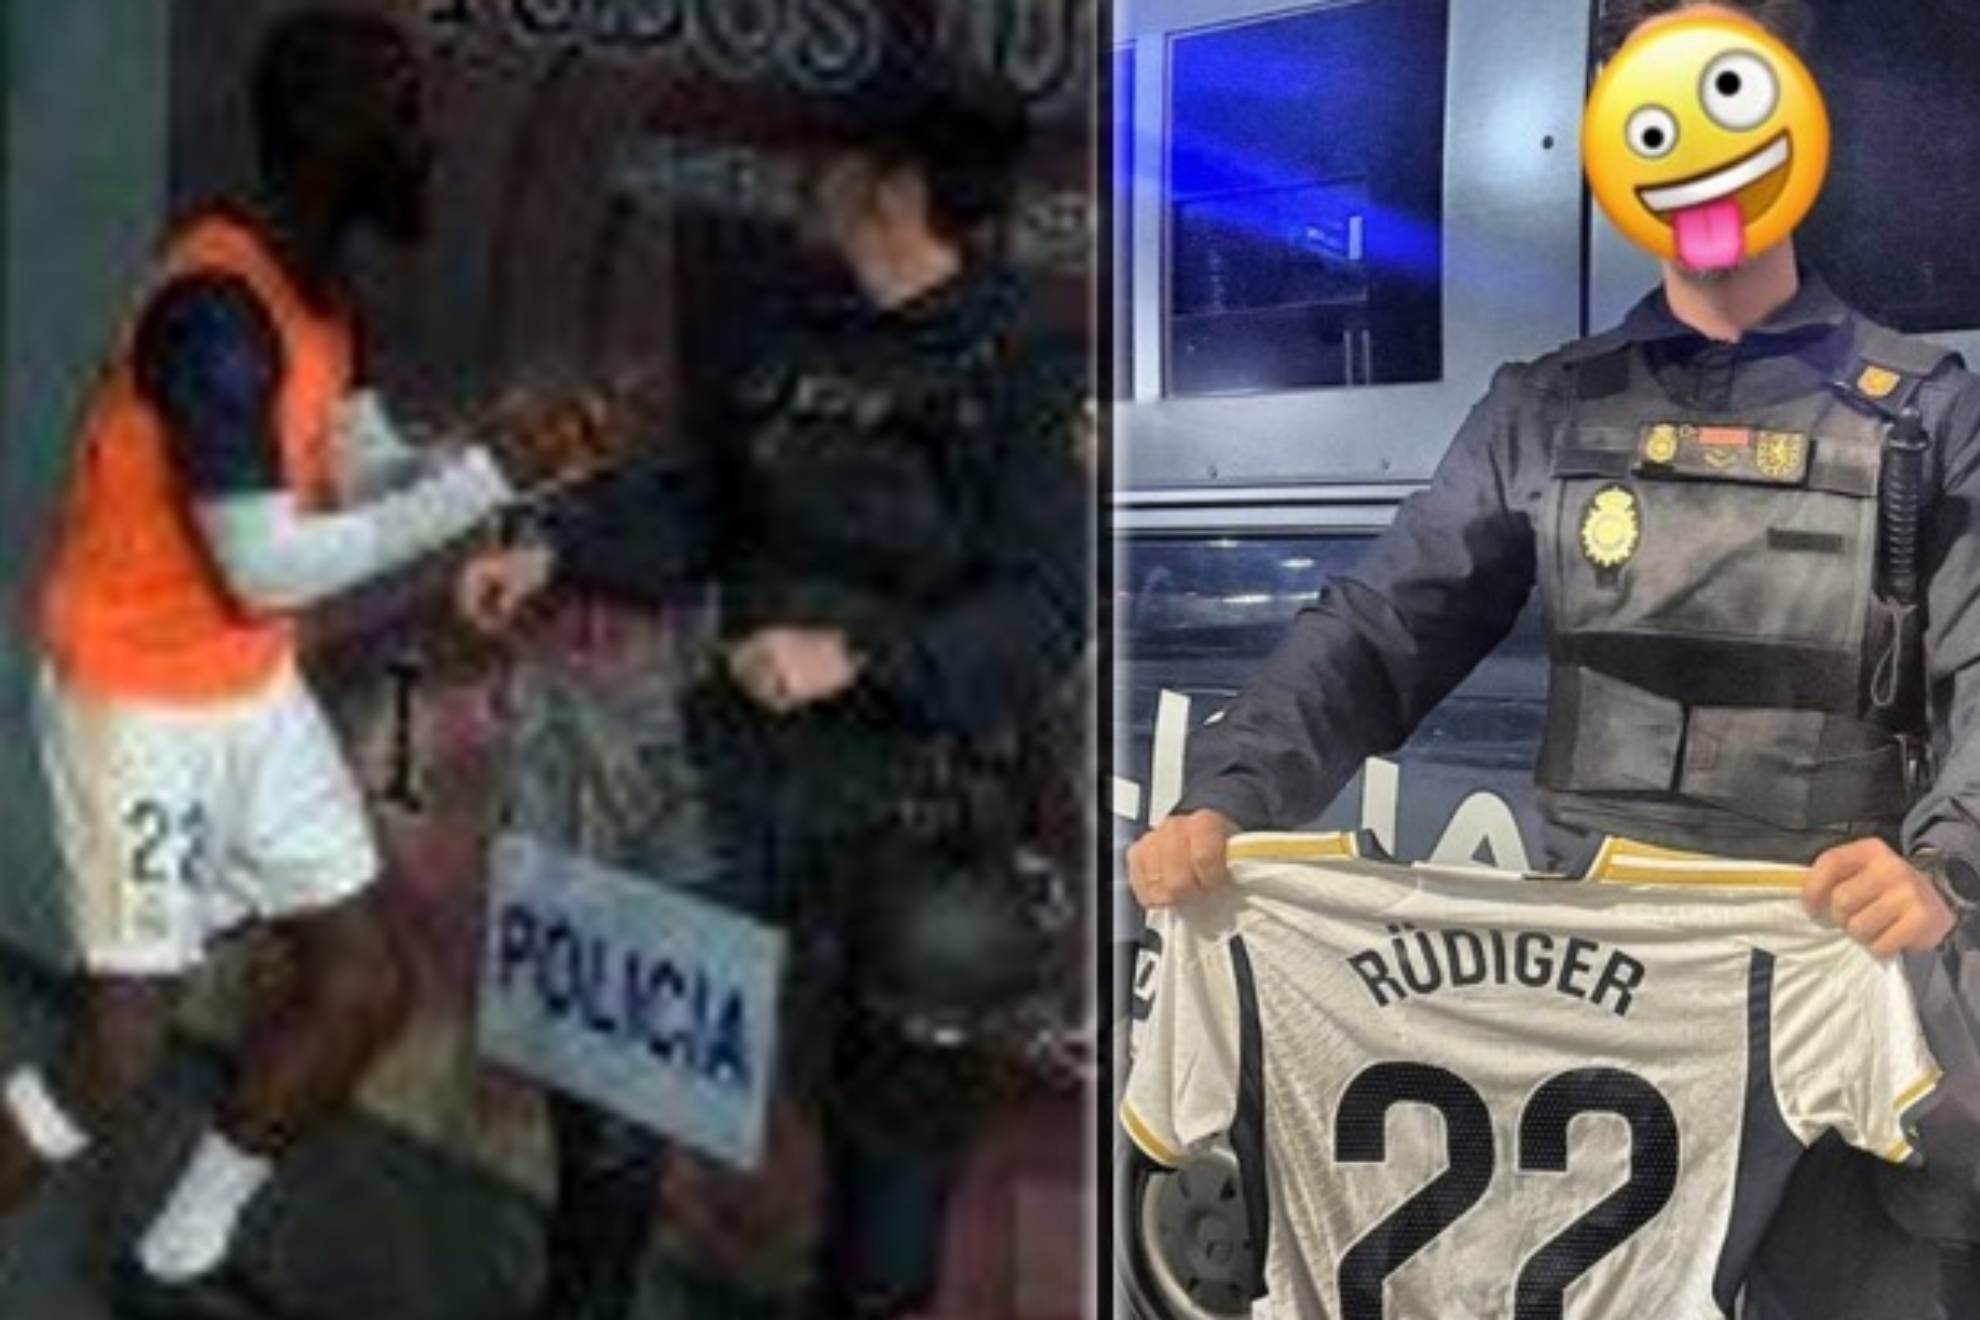 As� termin� la broma viral de R�diger a un Polic�a Nacional en el Cl�sico: No todo van a ser sustos